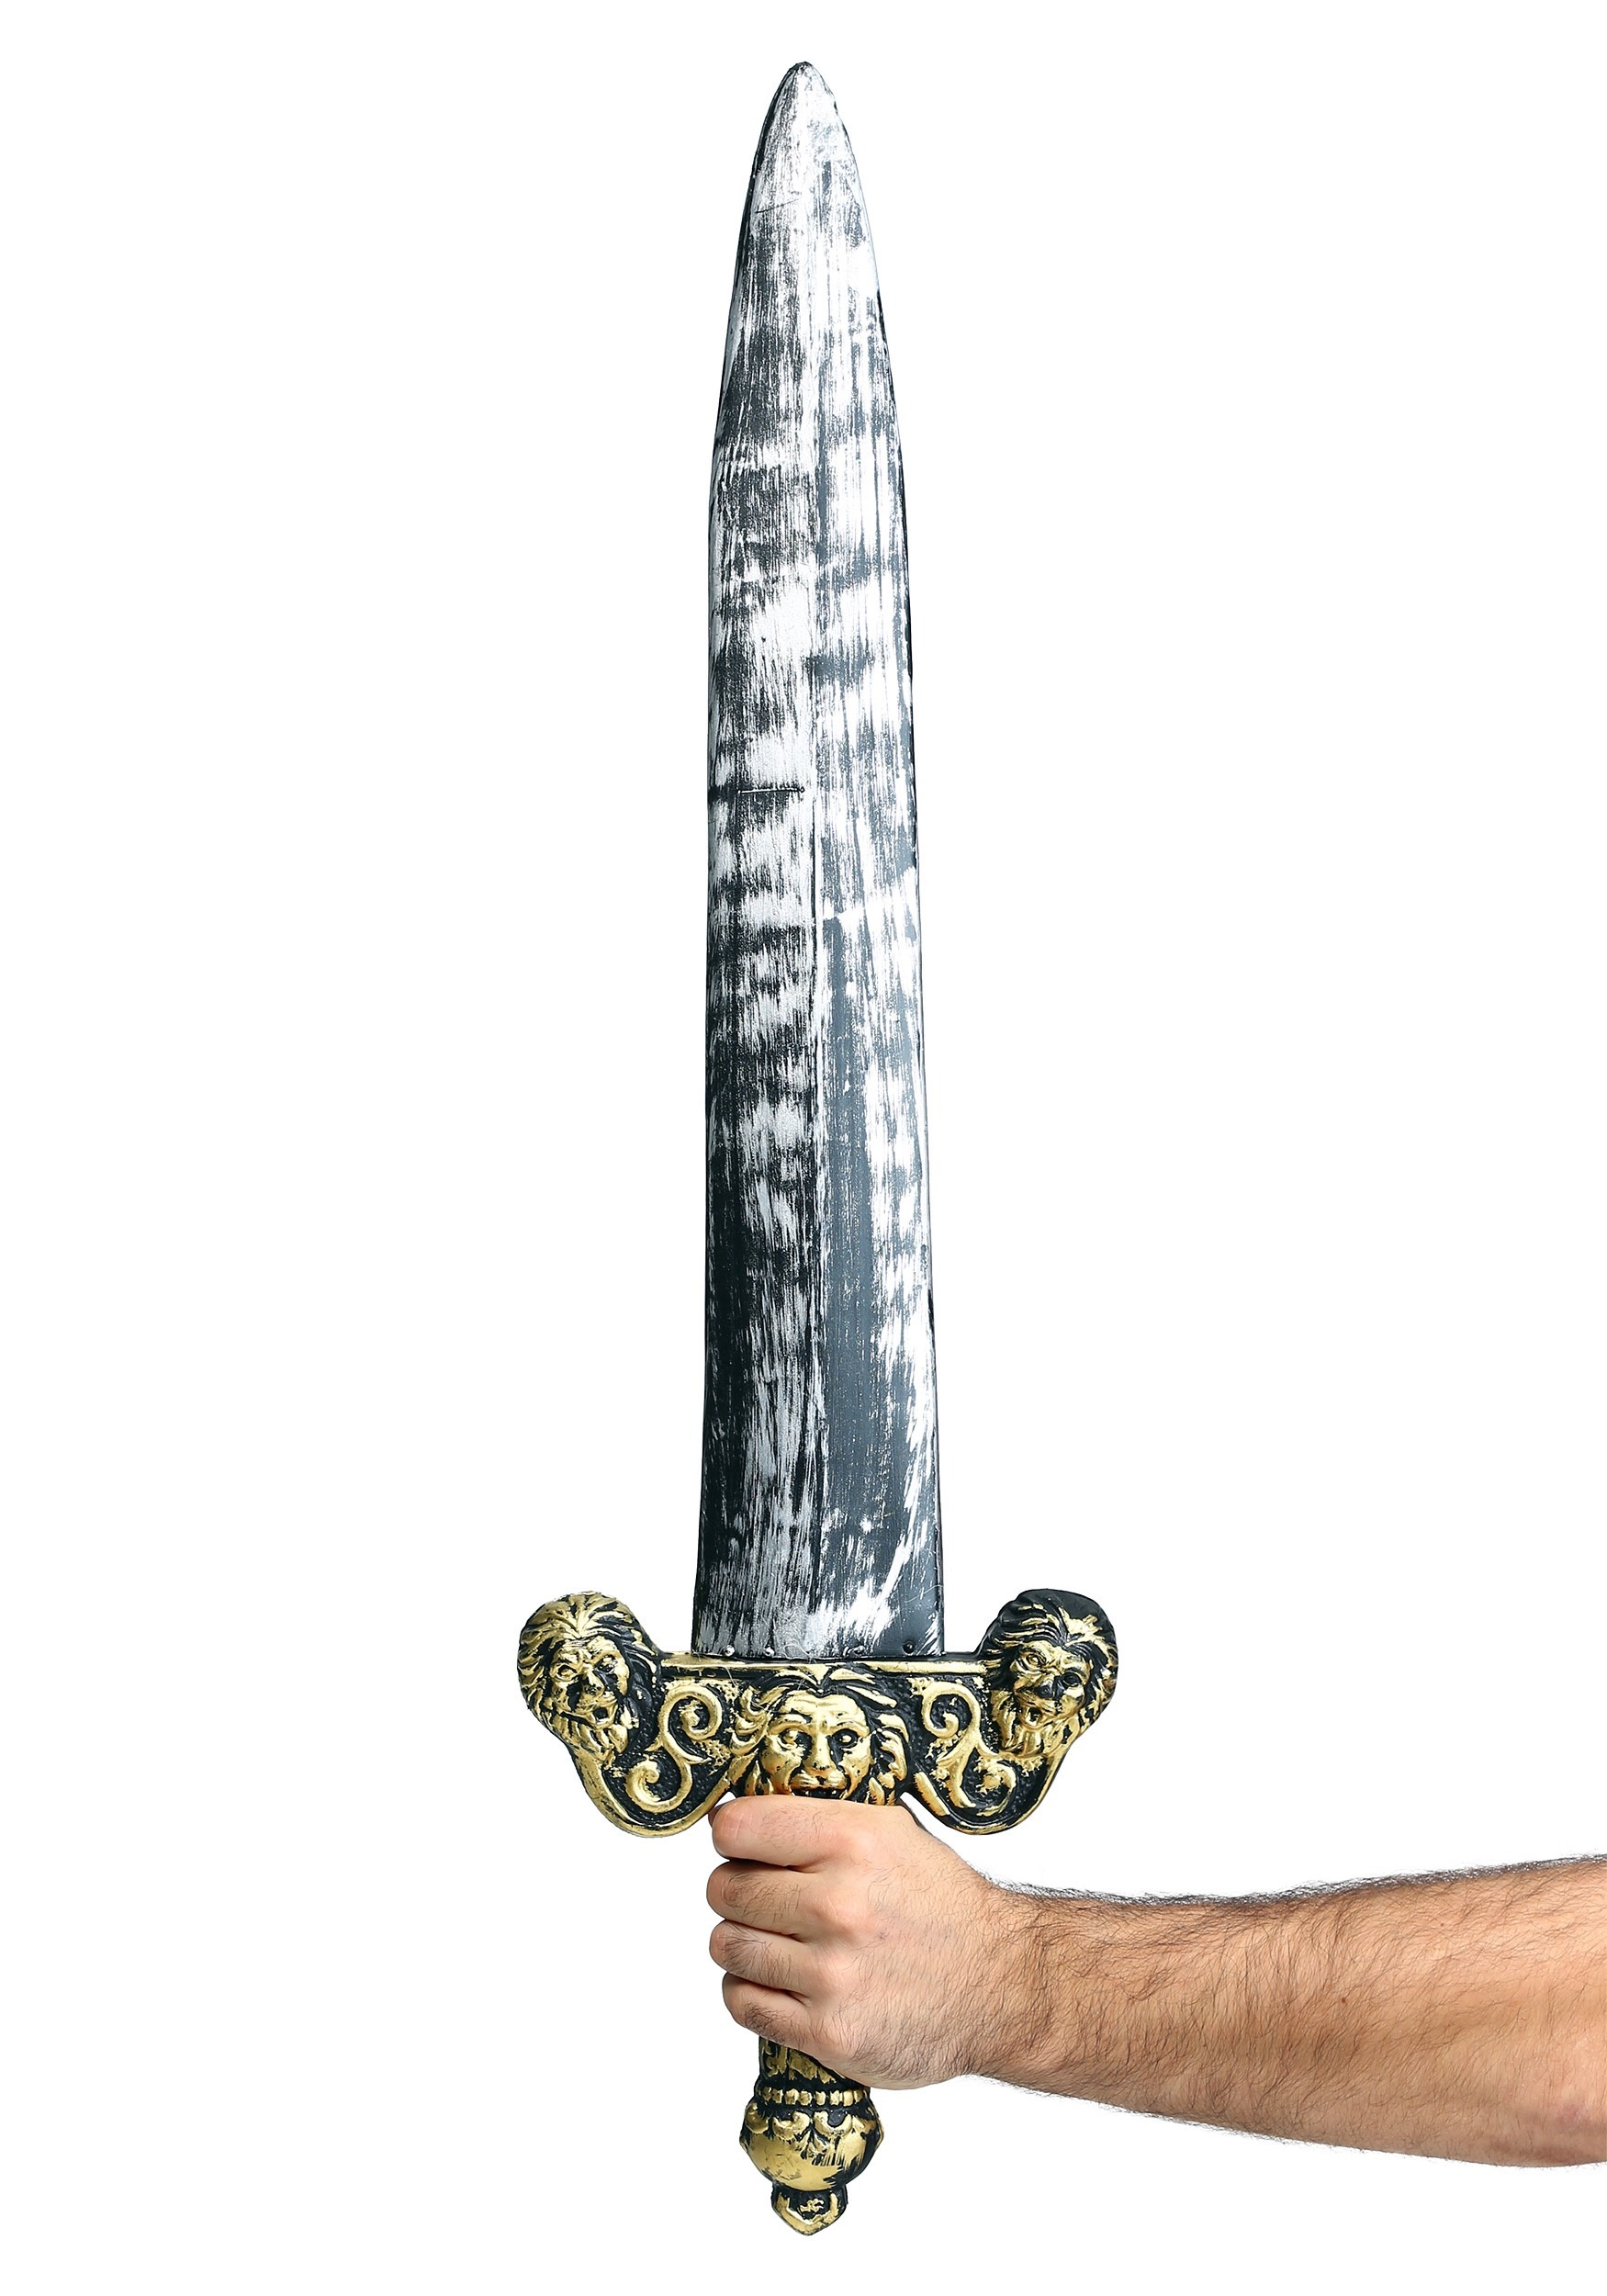 Or 29" Gladiator Sword 20" Shield Toy Set Médiéval Déguisement Costume Guerrier